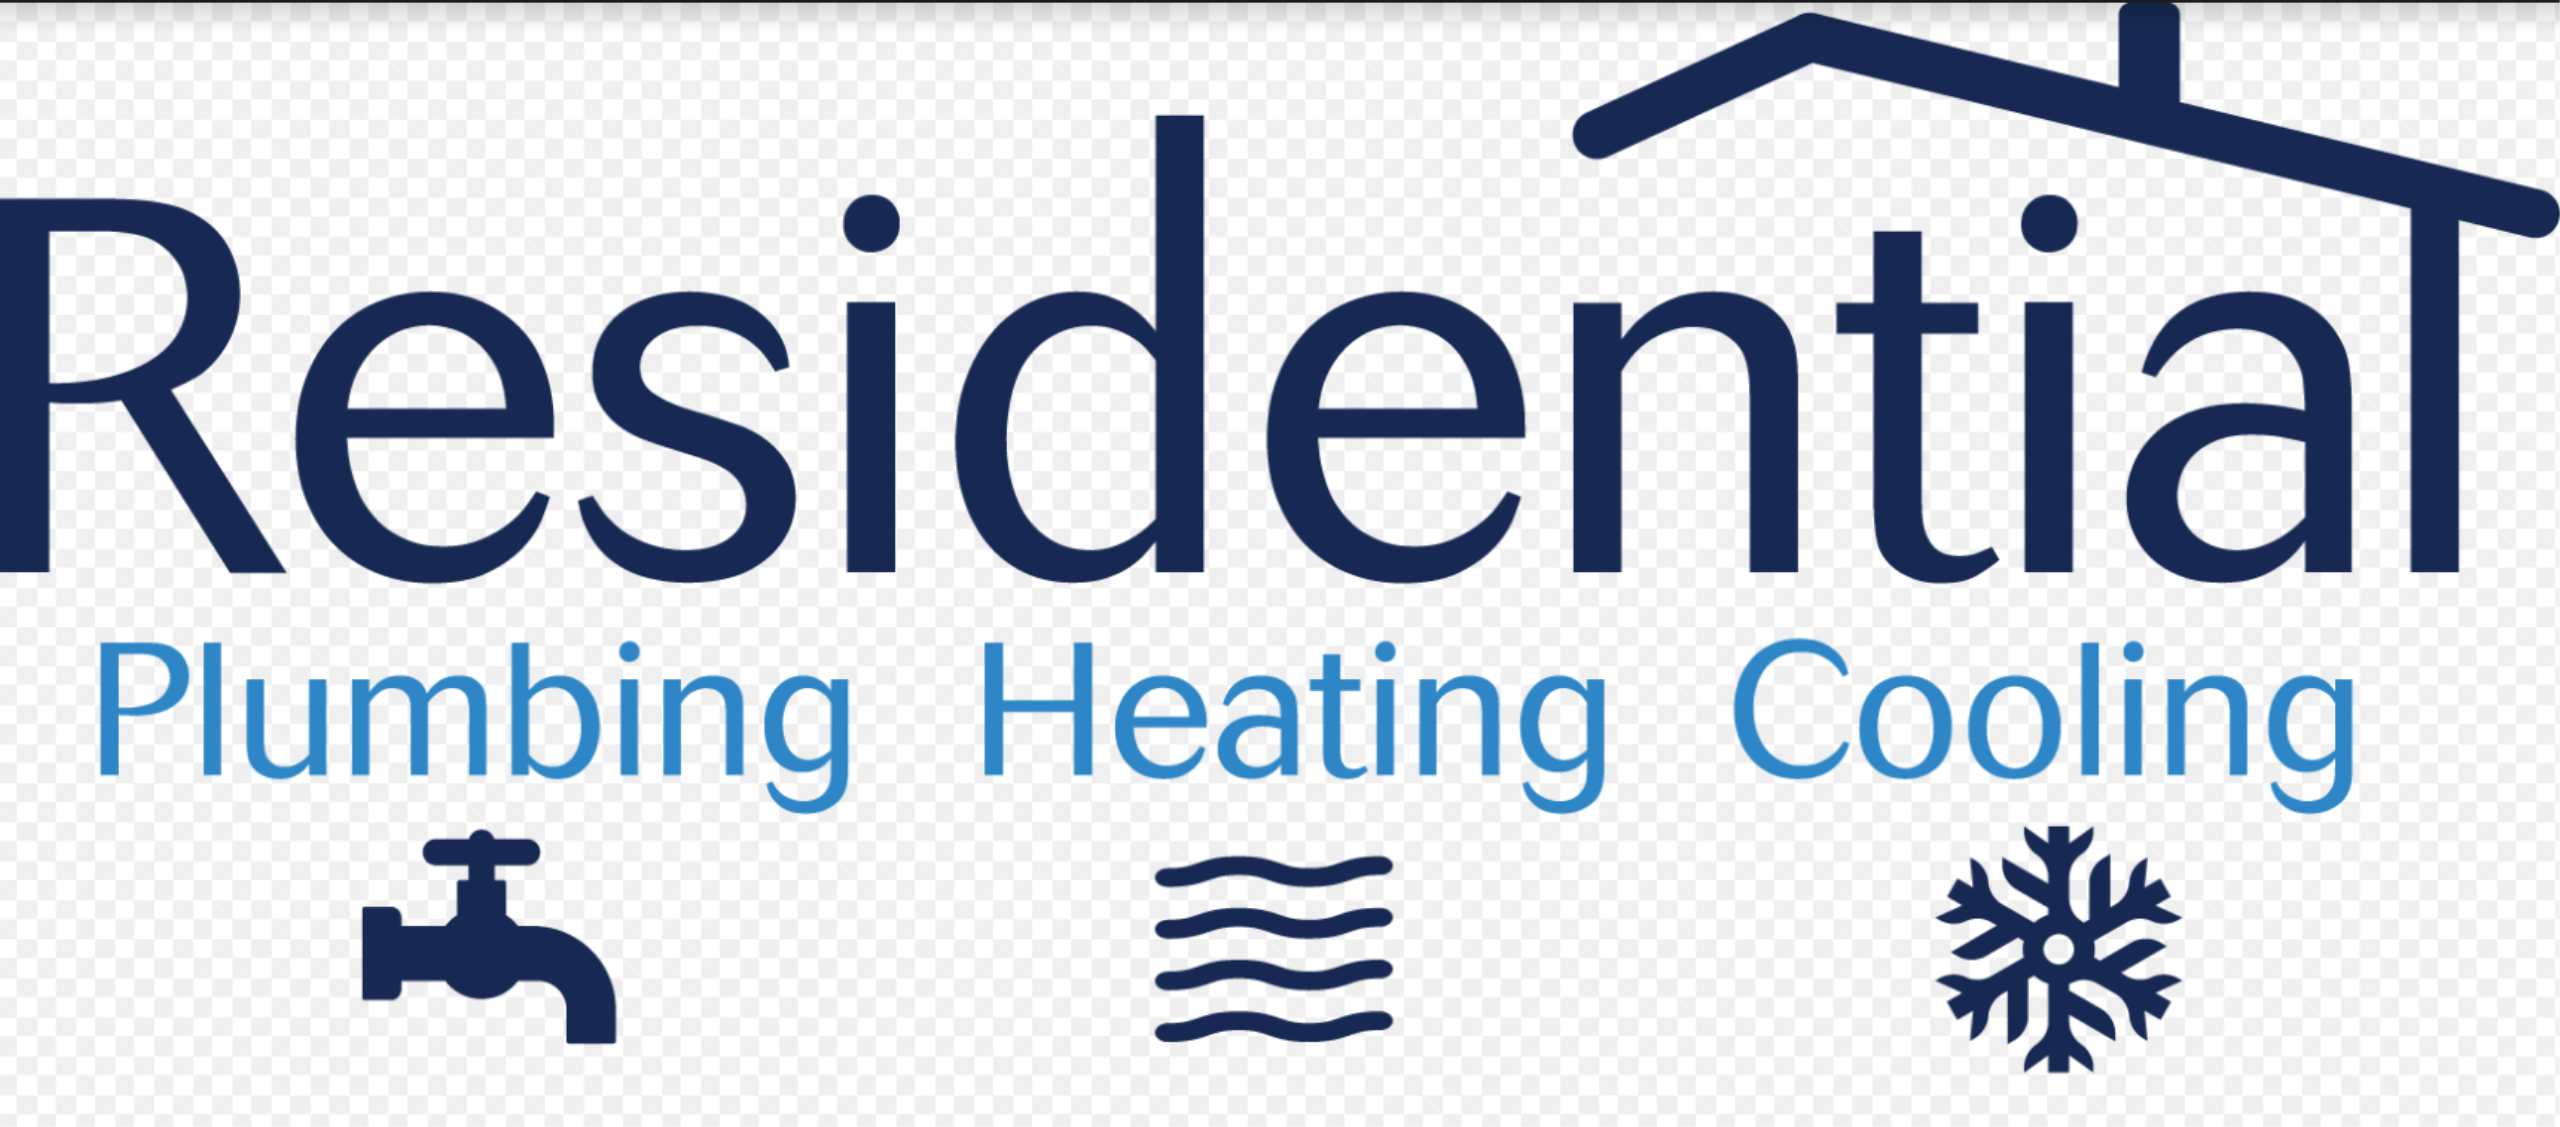 Residential Plumbing Heating & Cooling Logo